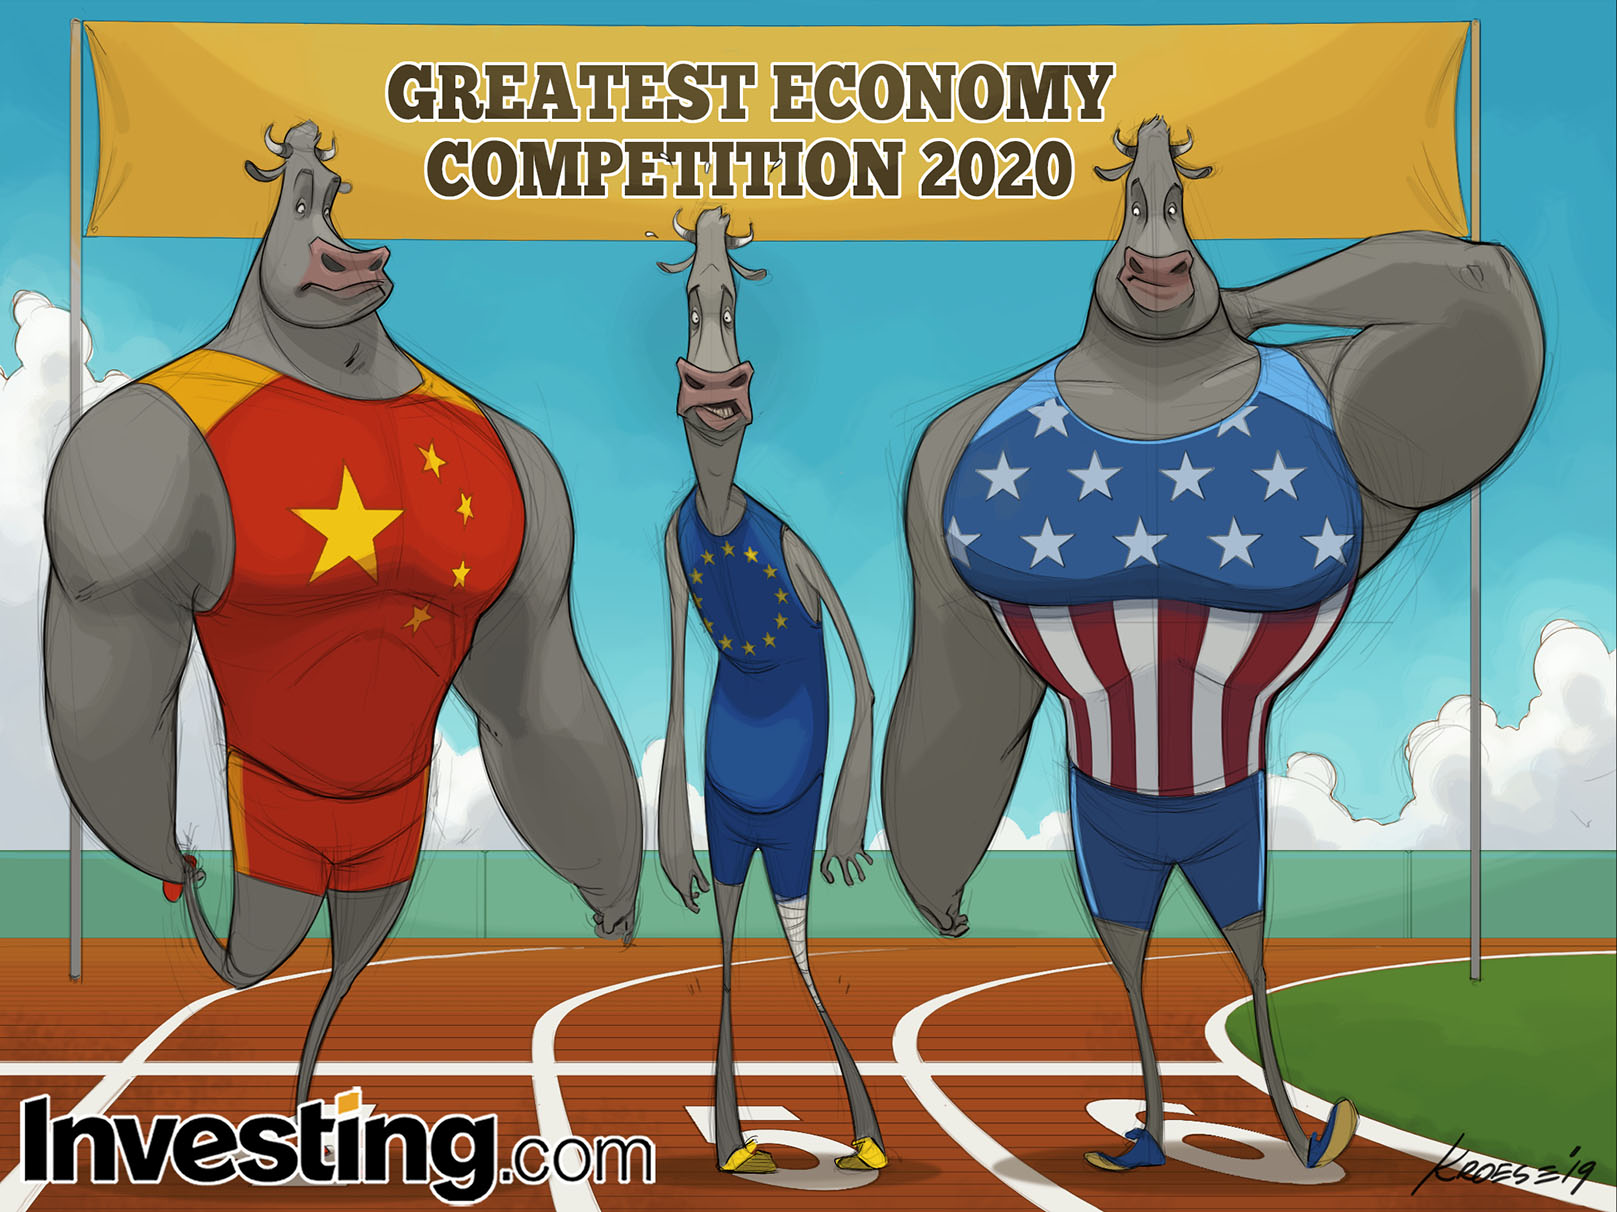 União Europeia continua lutando enquanto China e Estados Unidos competem pela supremacia econômica